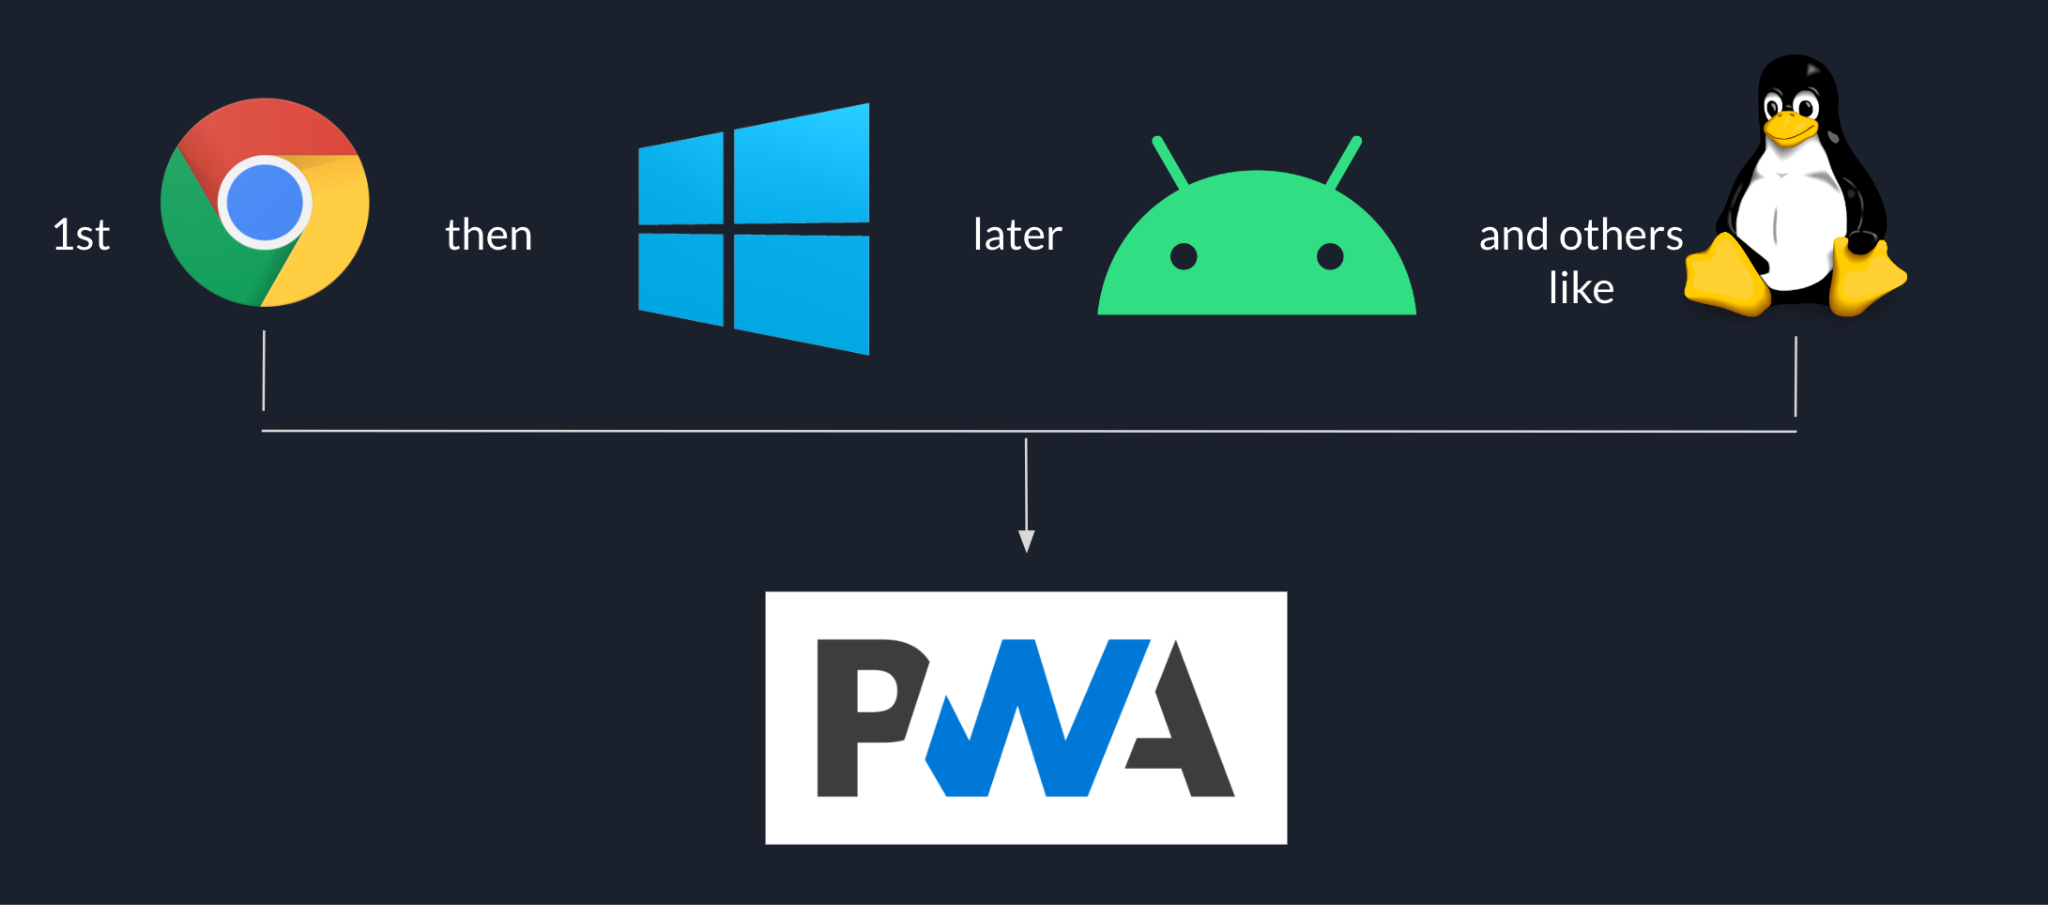 Séquence de déploiement des Goodnotes en commençant par Chrome, puis sous Windows, puis par Android et d&#39;autres plates-formes comme Linux à la fin, le tout basé sur la PWA.